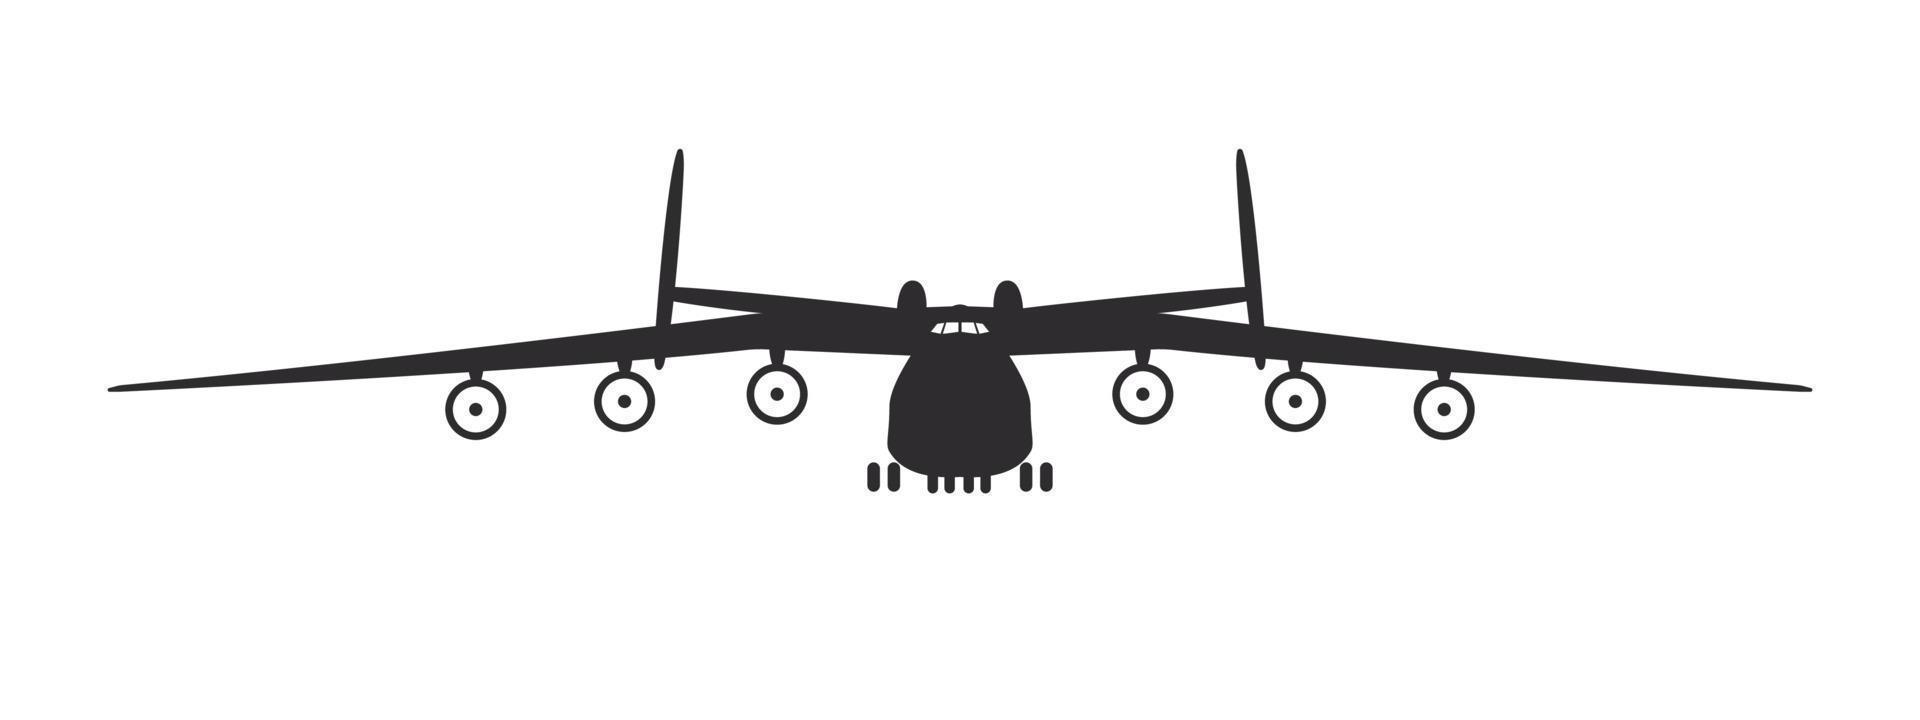 avion. le plus gros avion cargo. vue de face de silhouette d'avion. image vectorielle vecteur